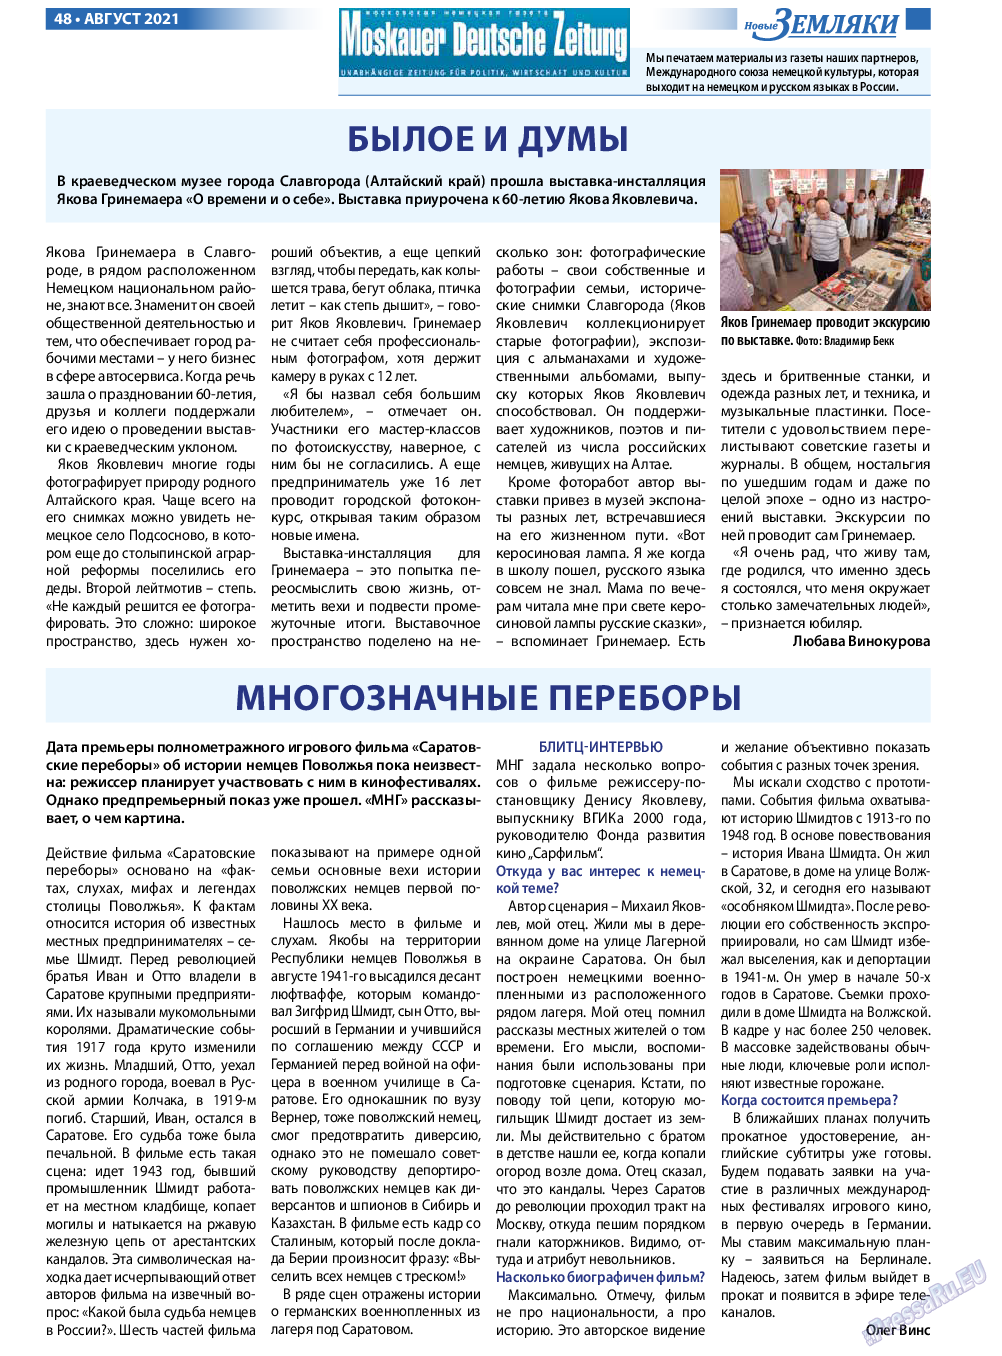 Новые Земляки, газета. 2021 №8 стр.48